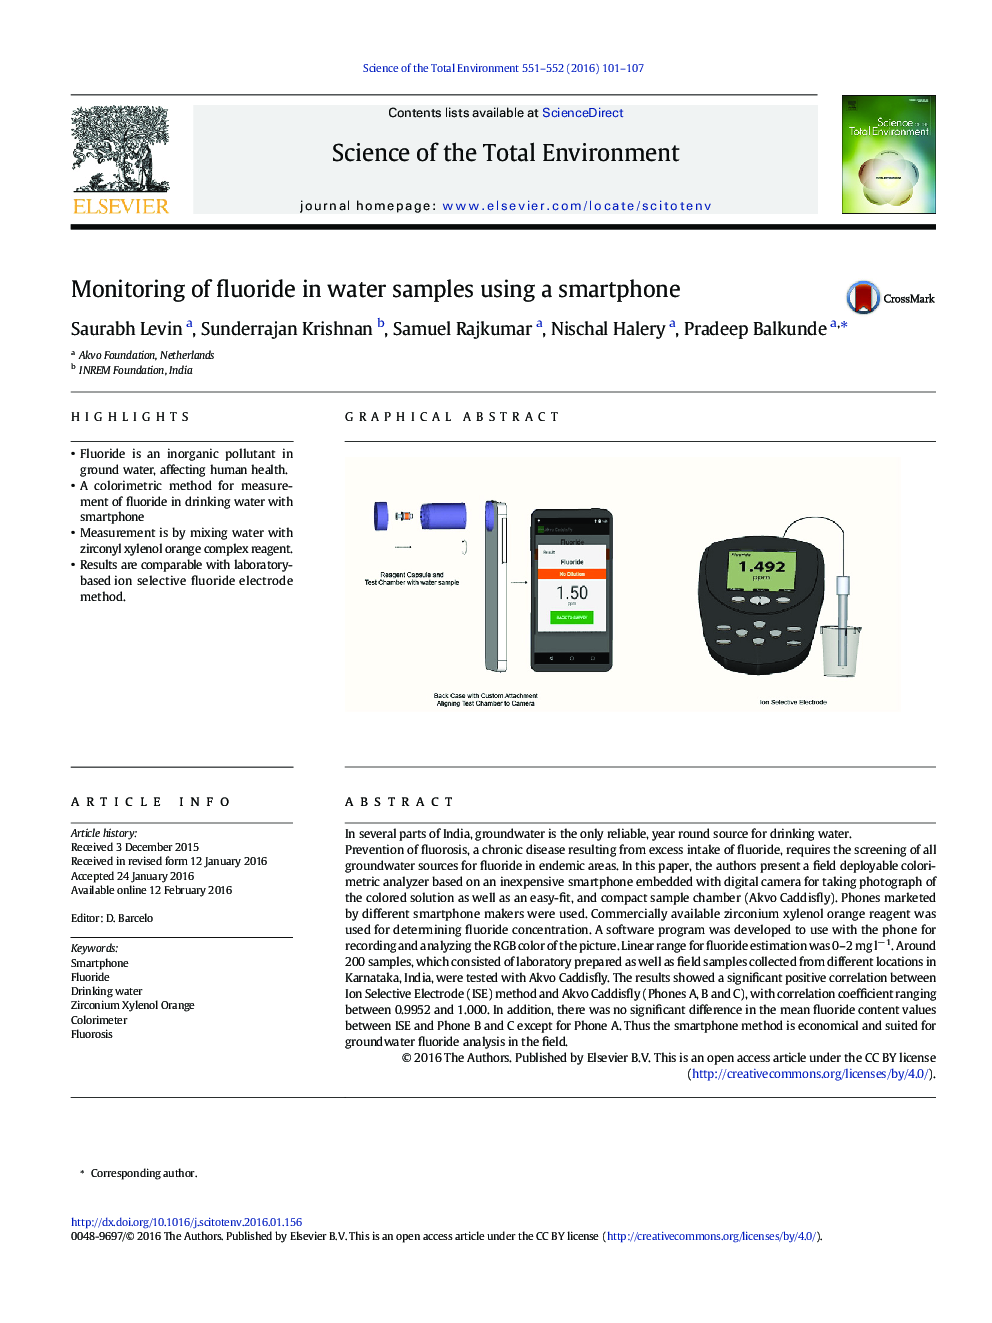 نظارت بر نمونه های فلوراید در آب با استفاده از یک گوشی هوشمند 